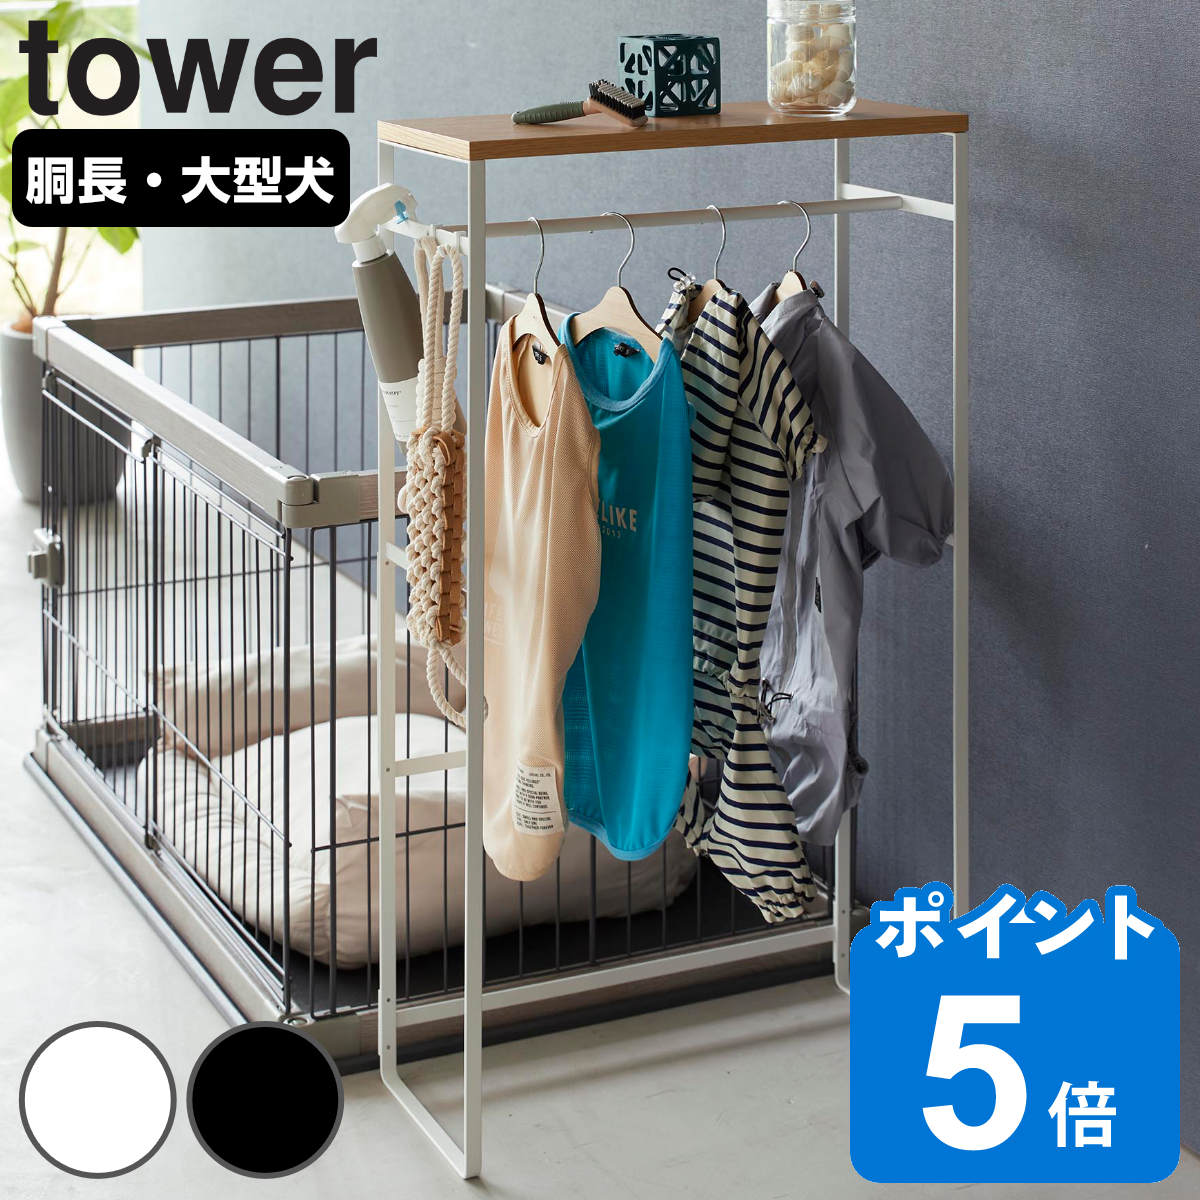 山崎実業 tower ペットコートハンガーラック タワー トール